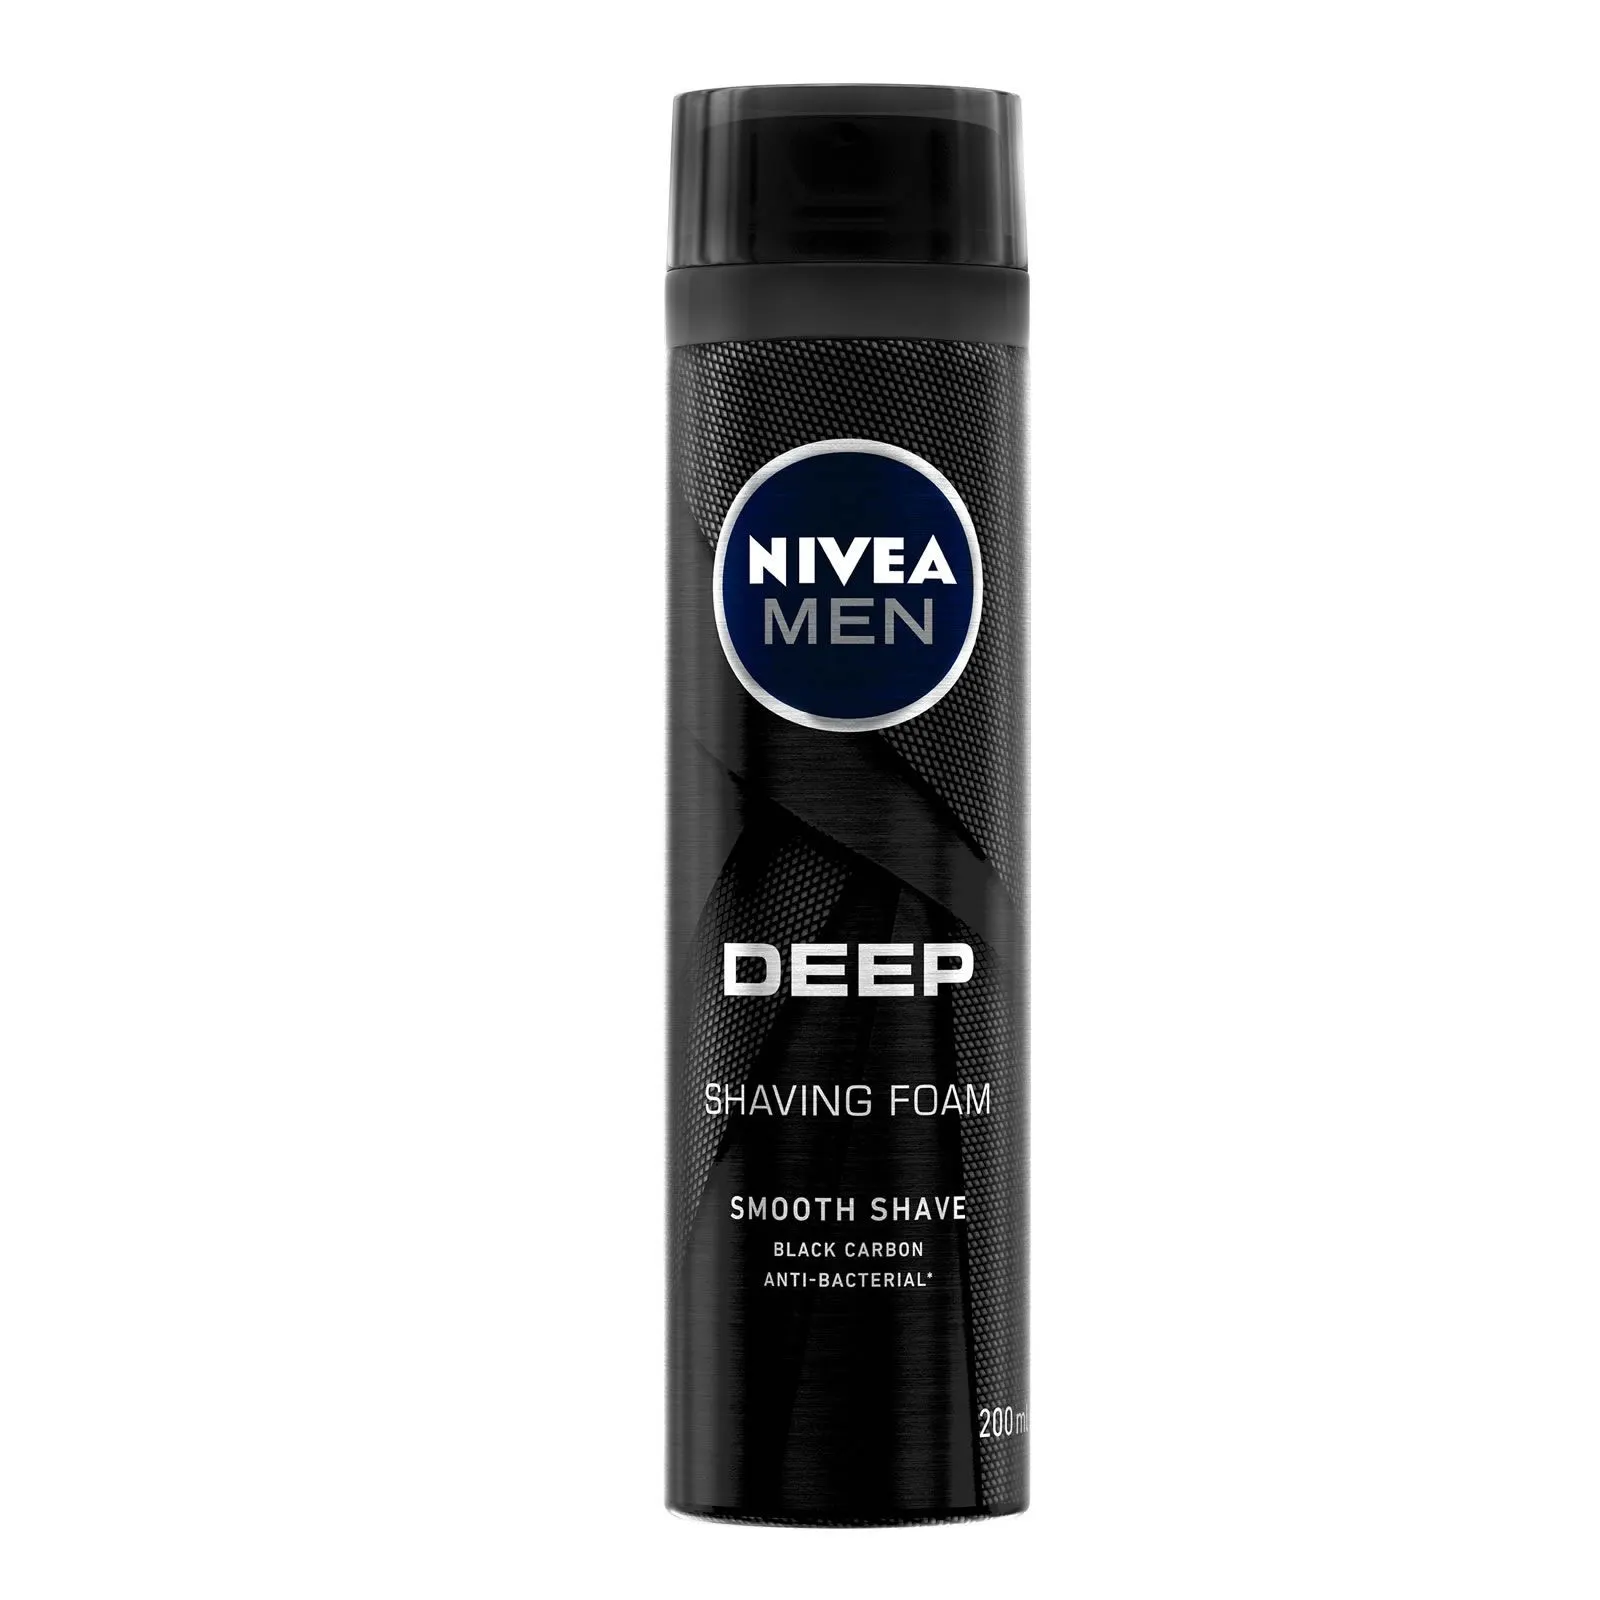 Comprar Smooth Shave Nivea Men Deep 200 Ml